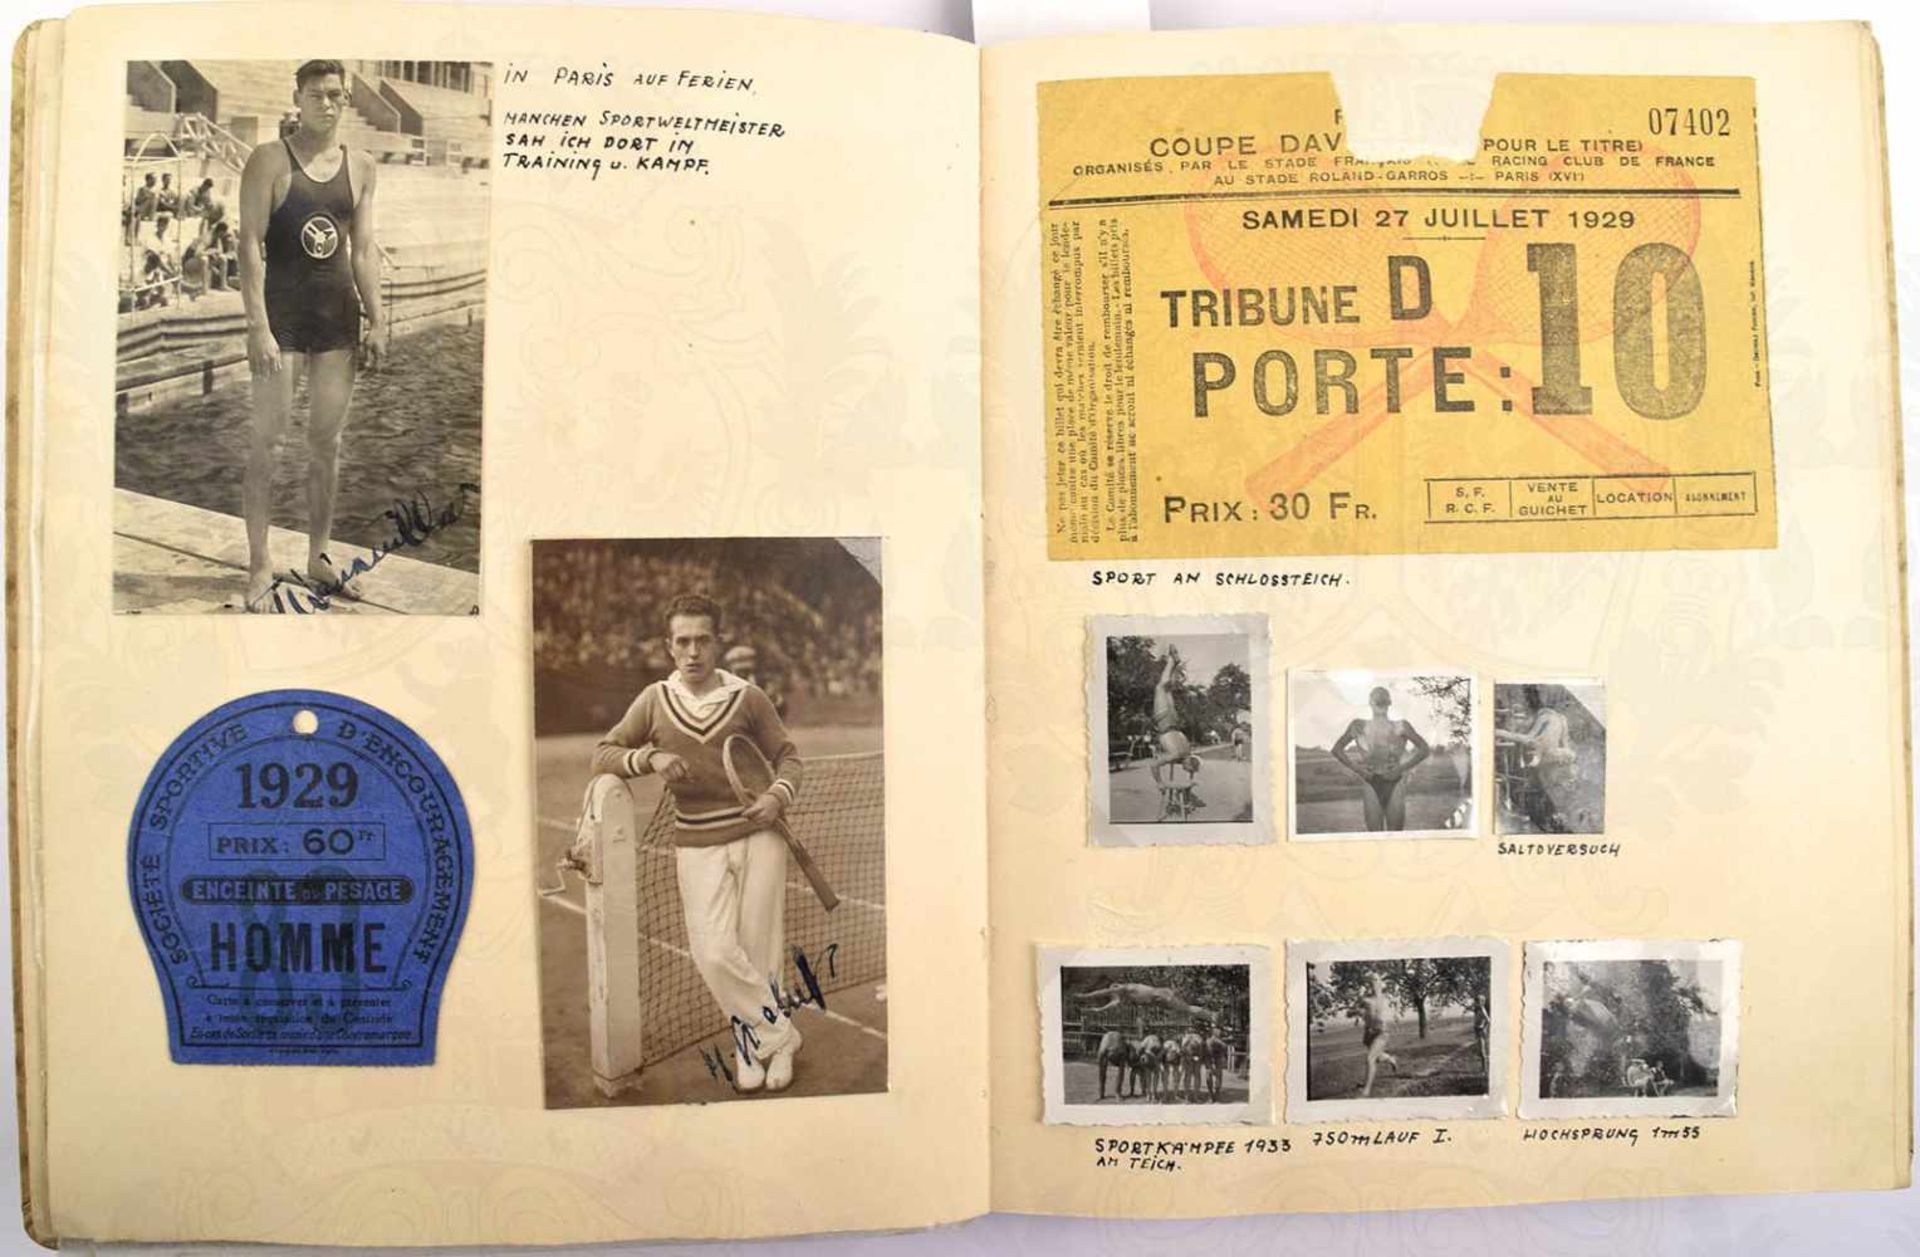 NACHLASS DES LEICHTATHLETEN FRIEDRICH SCHAFFER, 5 Sportalben, ges. ca. 750 Fotos, 1934-1953, - Bild 2 aus 3